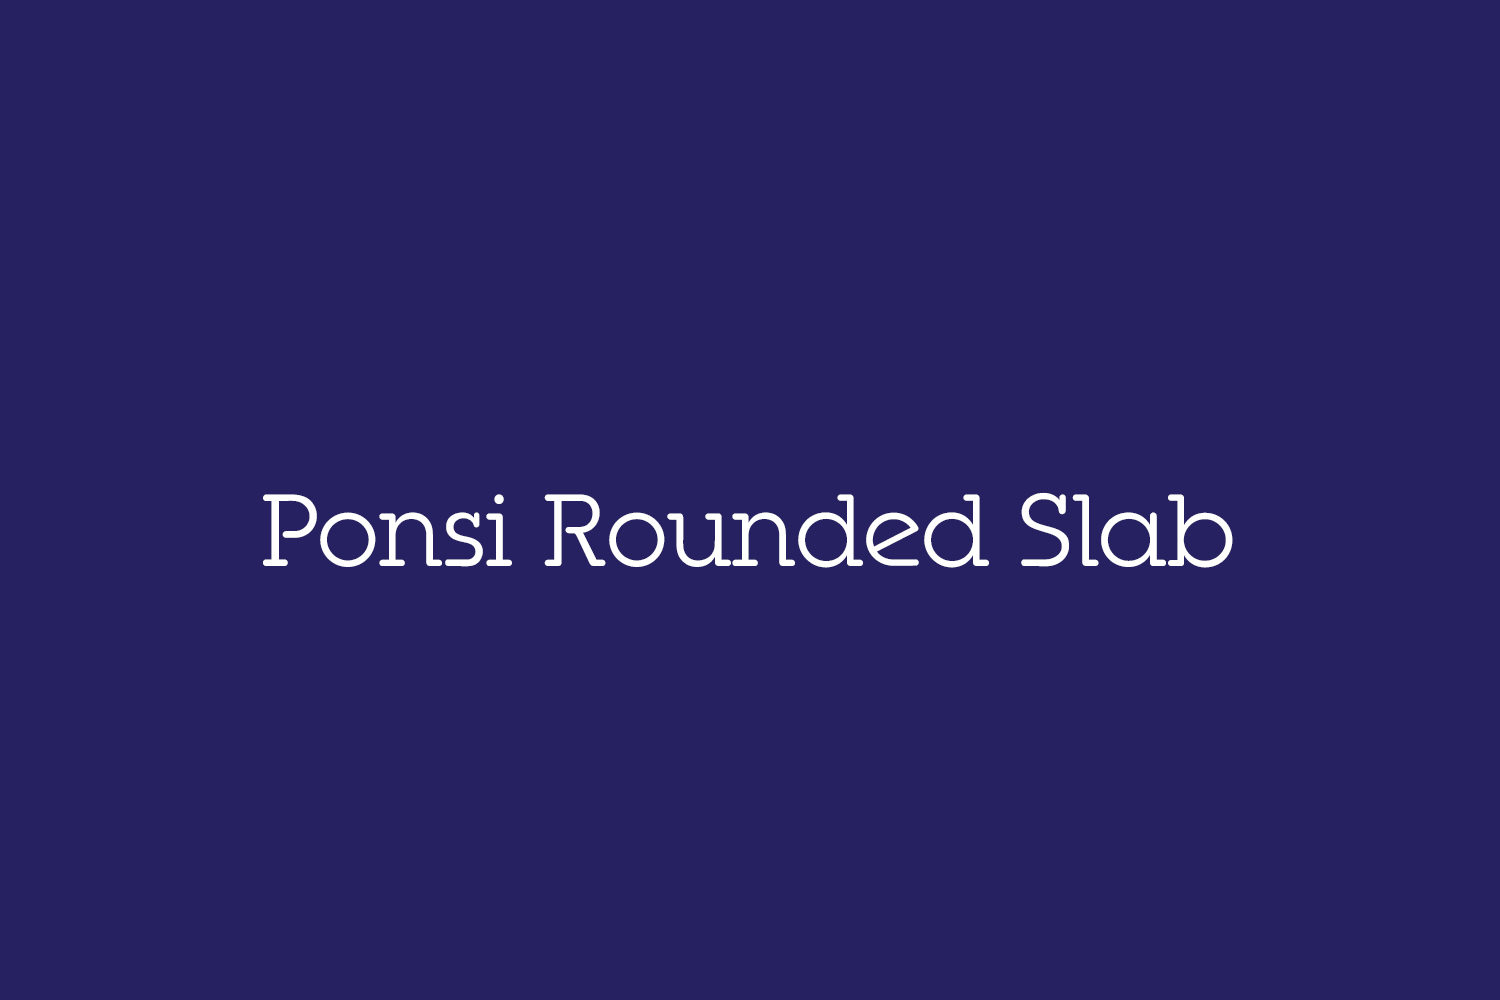 Ponsi Rounded Slab